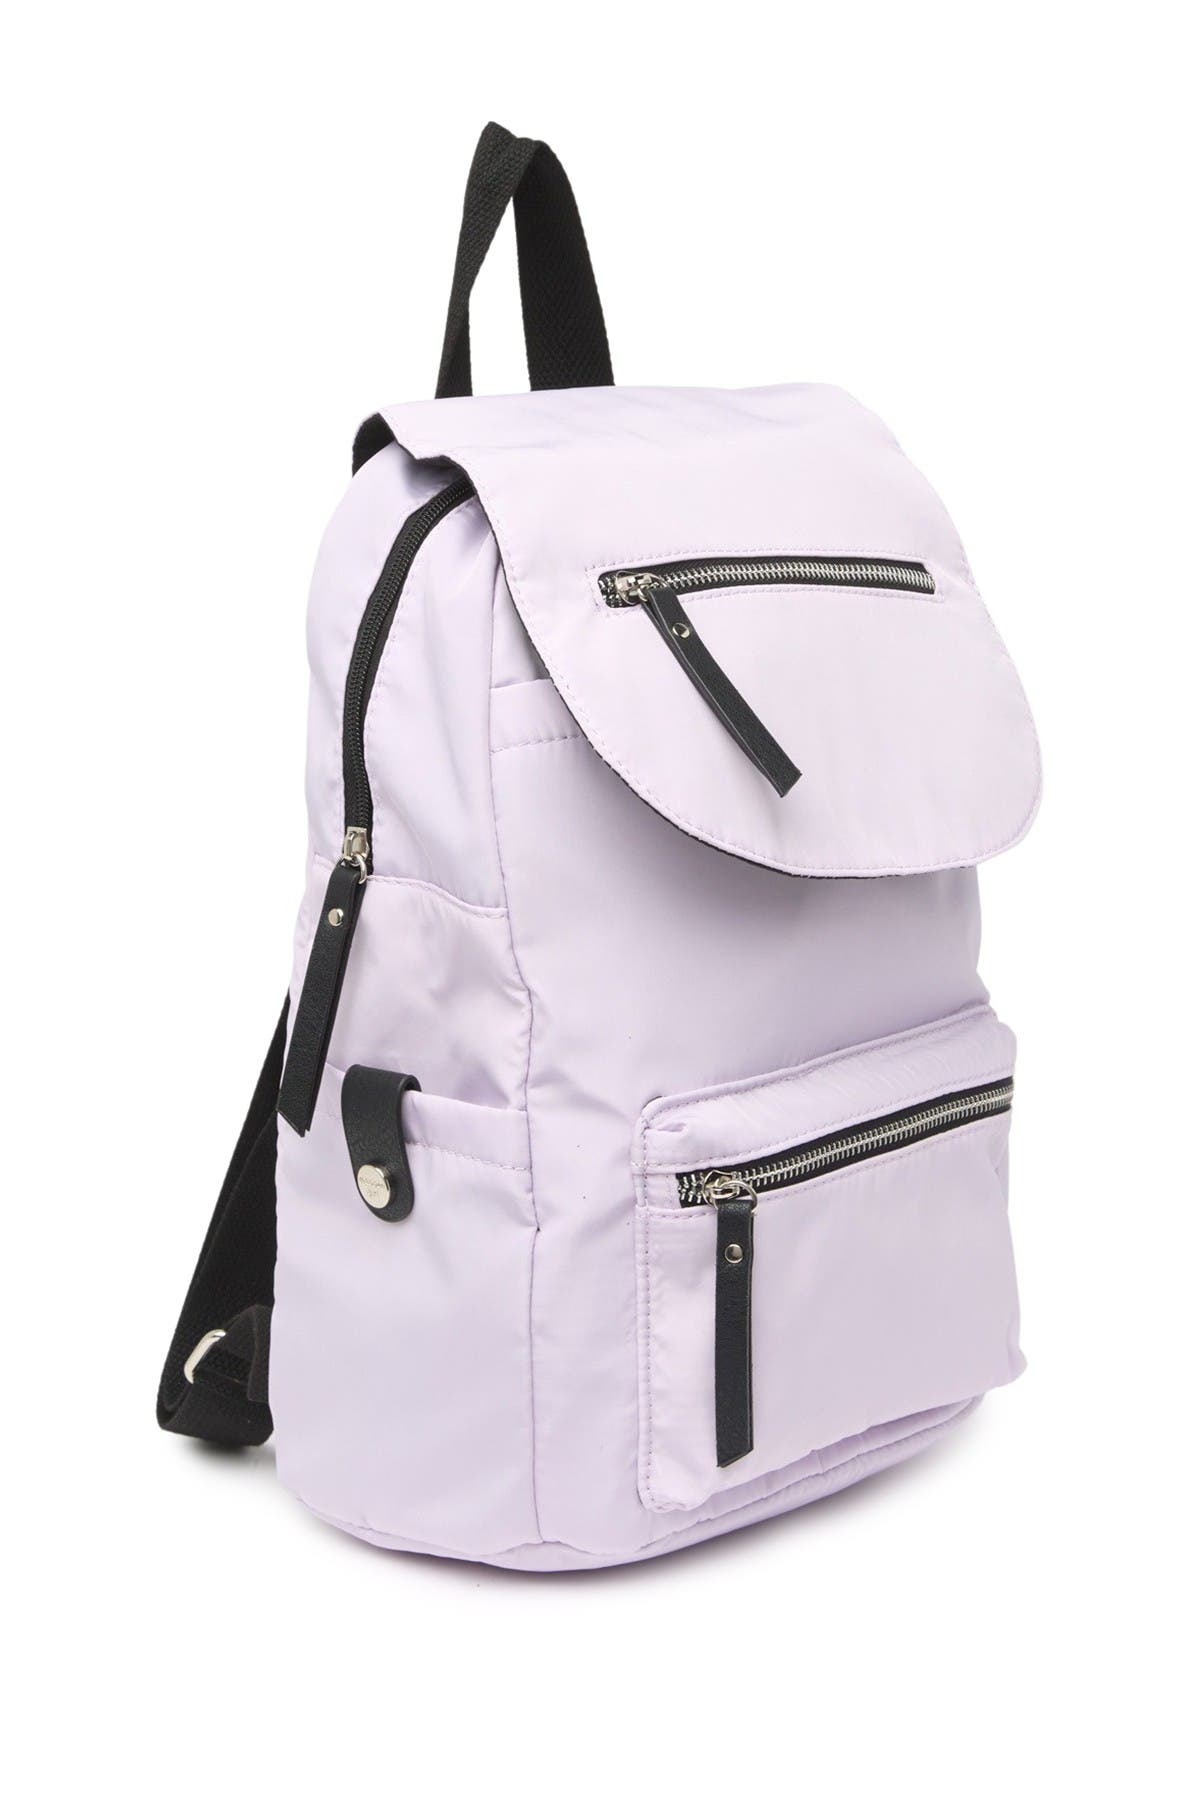 Madden Girl Proper Flap Nylon Backpack In Medium Purple7